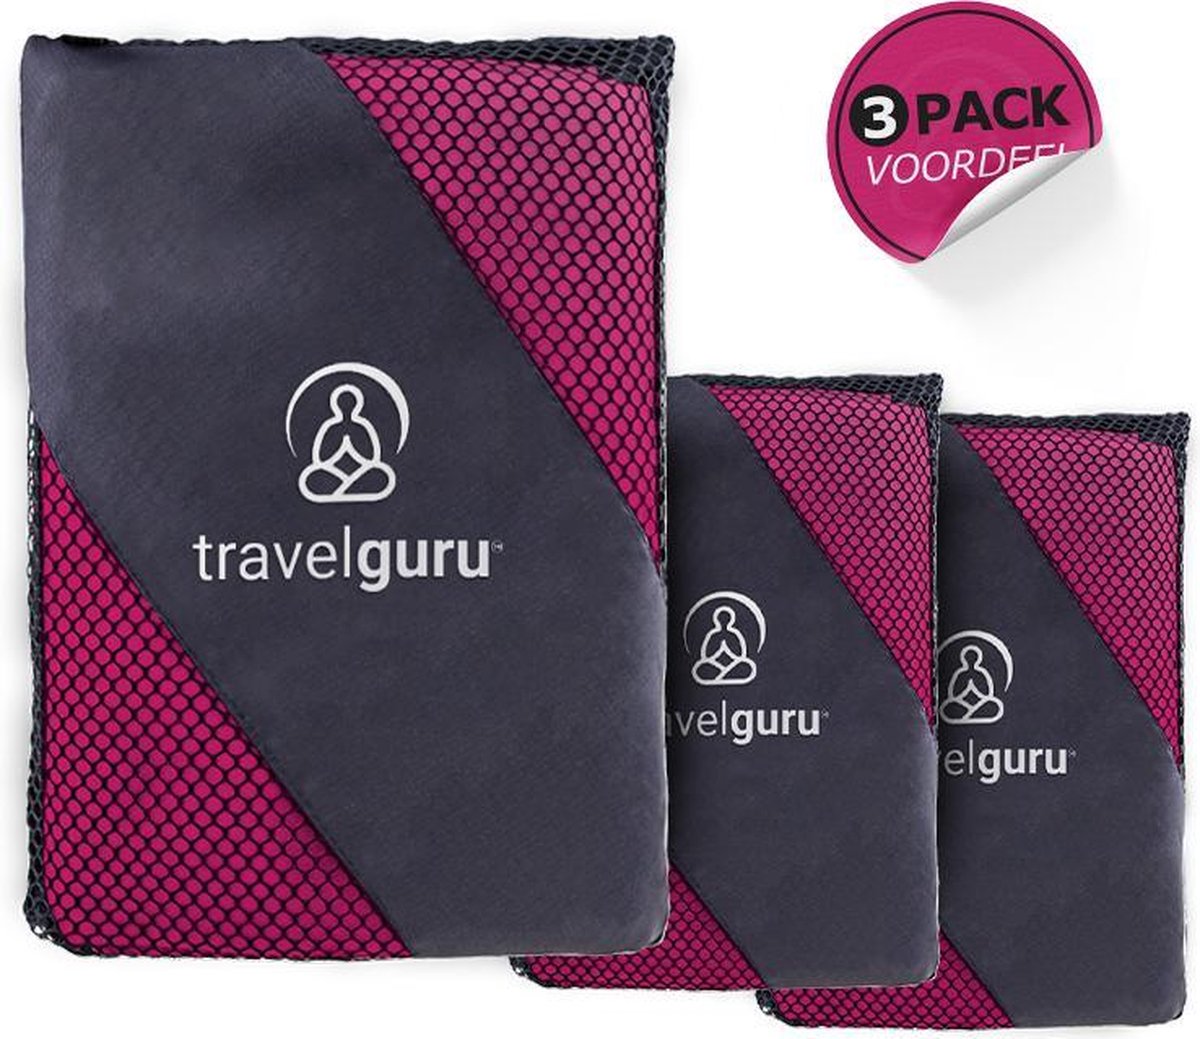 Travelguru™ Microvezel Reishanddoek Set van 3 - 1x Large (85 * 150cm), 2x Small (40 * 80 cm) - Microvezel handdoek - Sneldrogende, lichtgewicht handdoek ideaal voor sporten, reizen, outdoor & strand - Microfiber Travel Towel XL - Roze